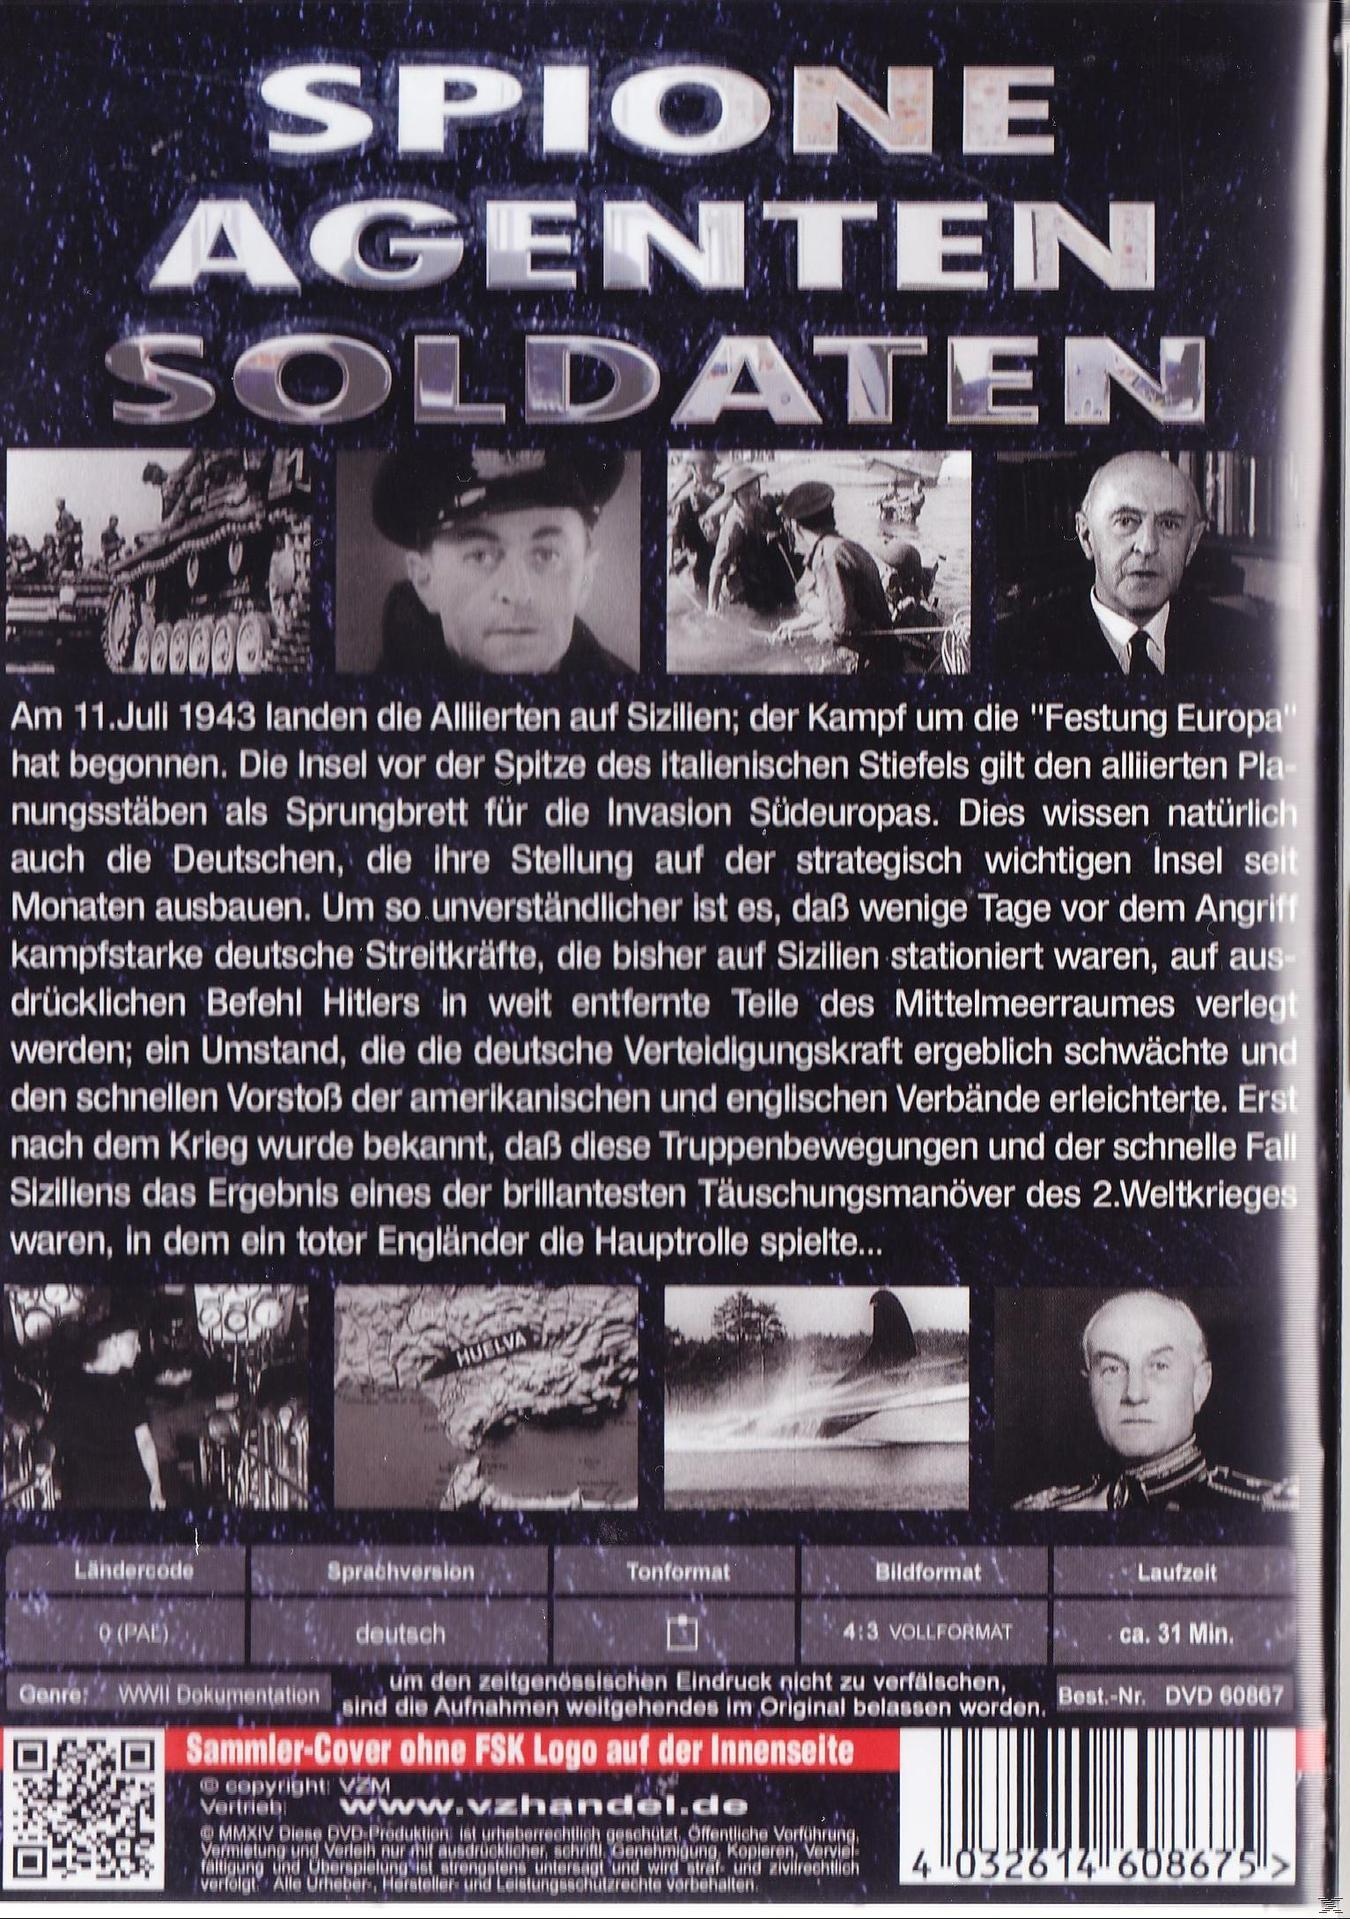 - Soldaten, Martin: DVD Sizilien 18 Alliierten auf der Spione, Landung Folge Agenten, Major